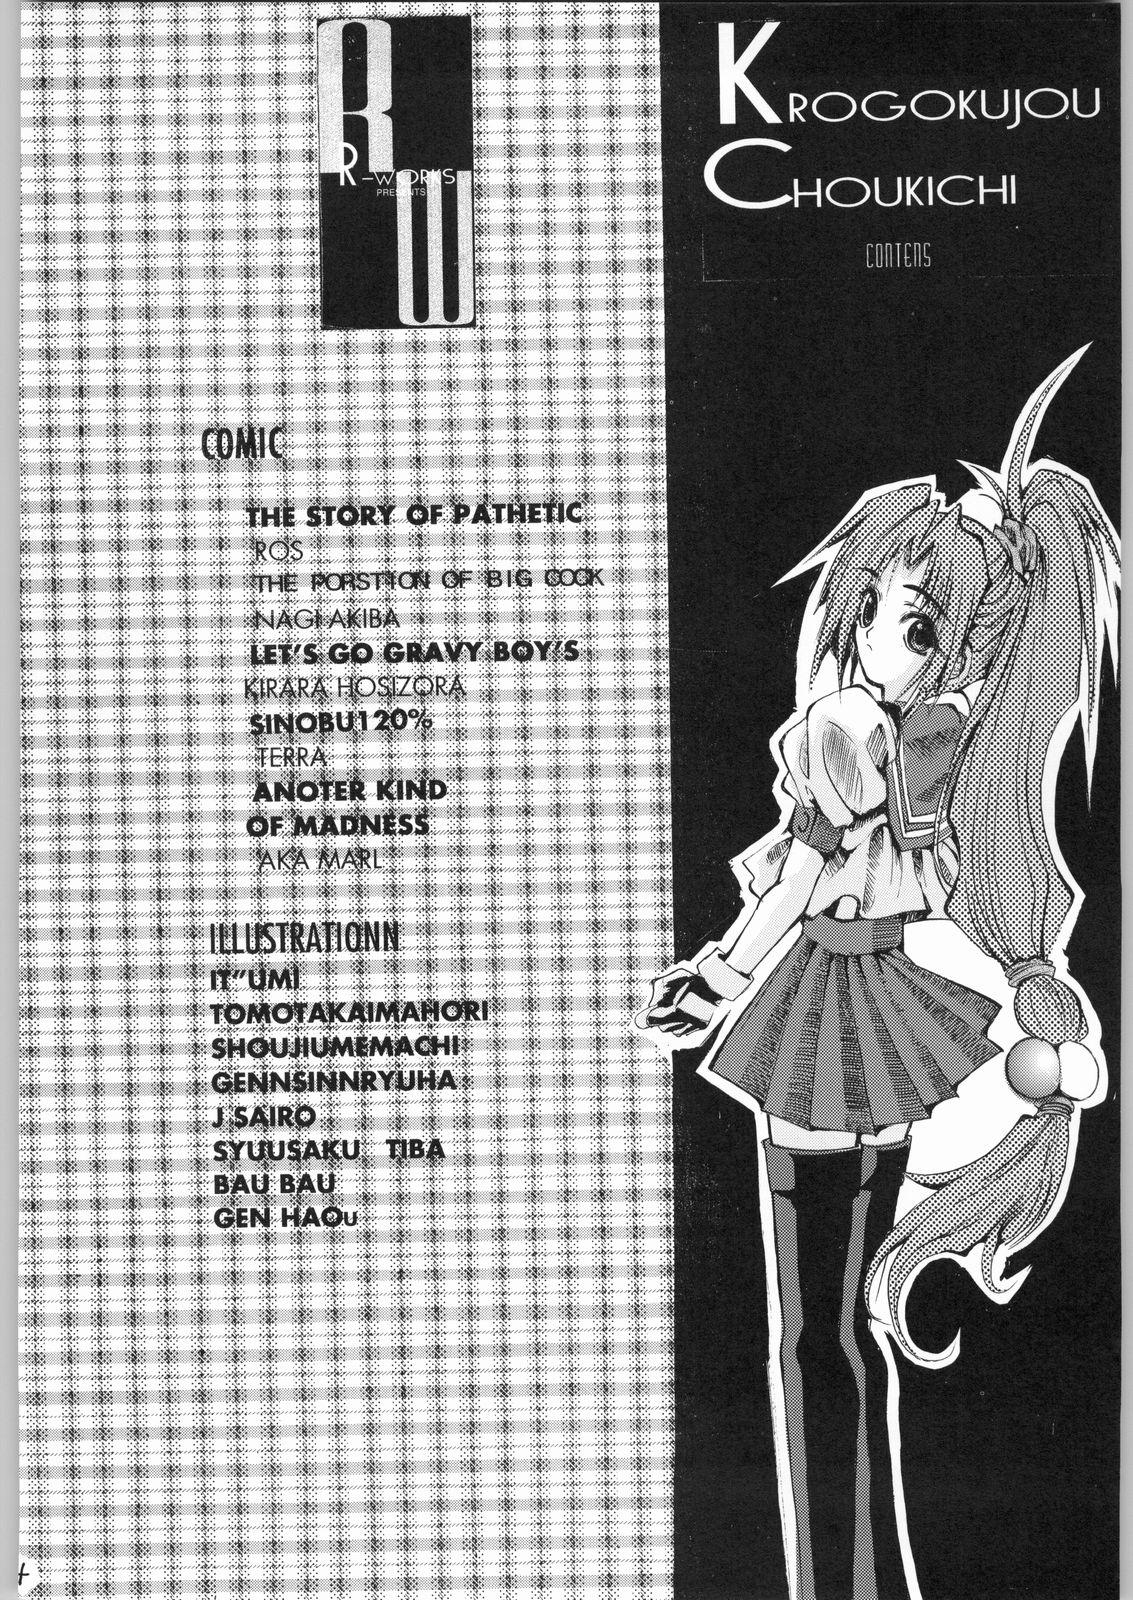 Puta Kuro Gokujou Choukichi - Asuka 120 Fucking Pussy - Page 3